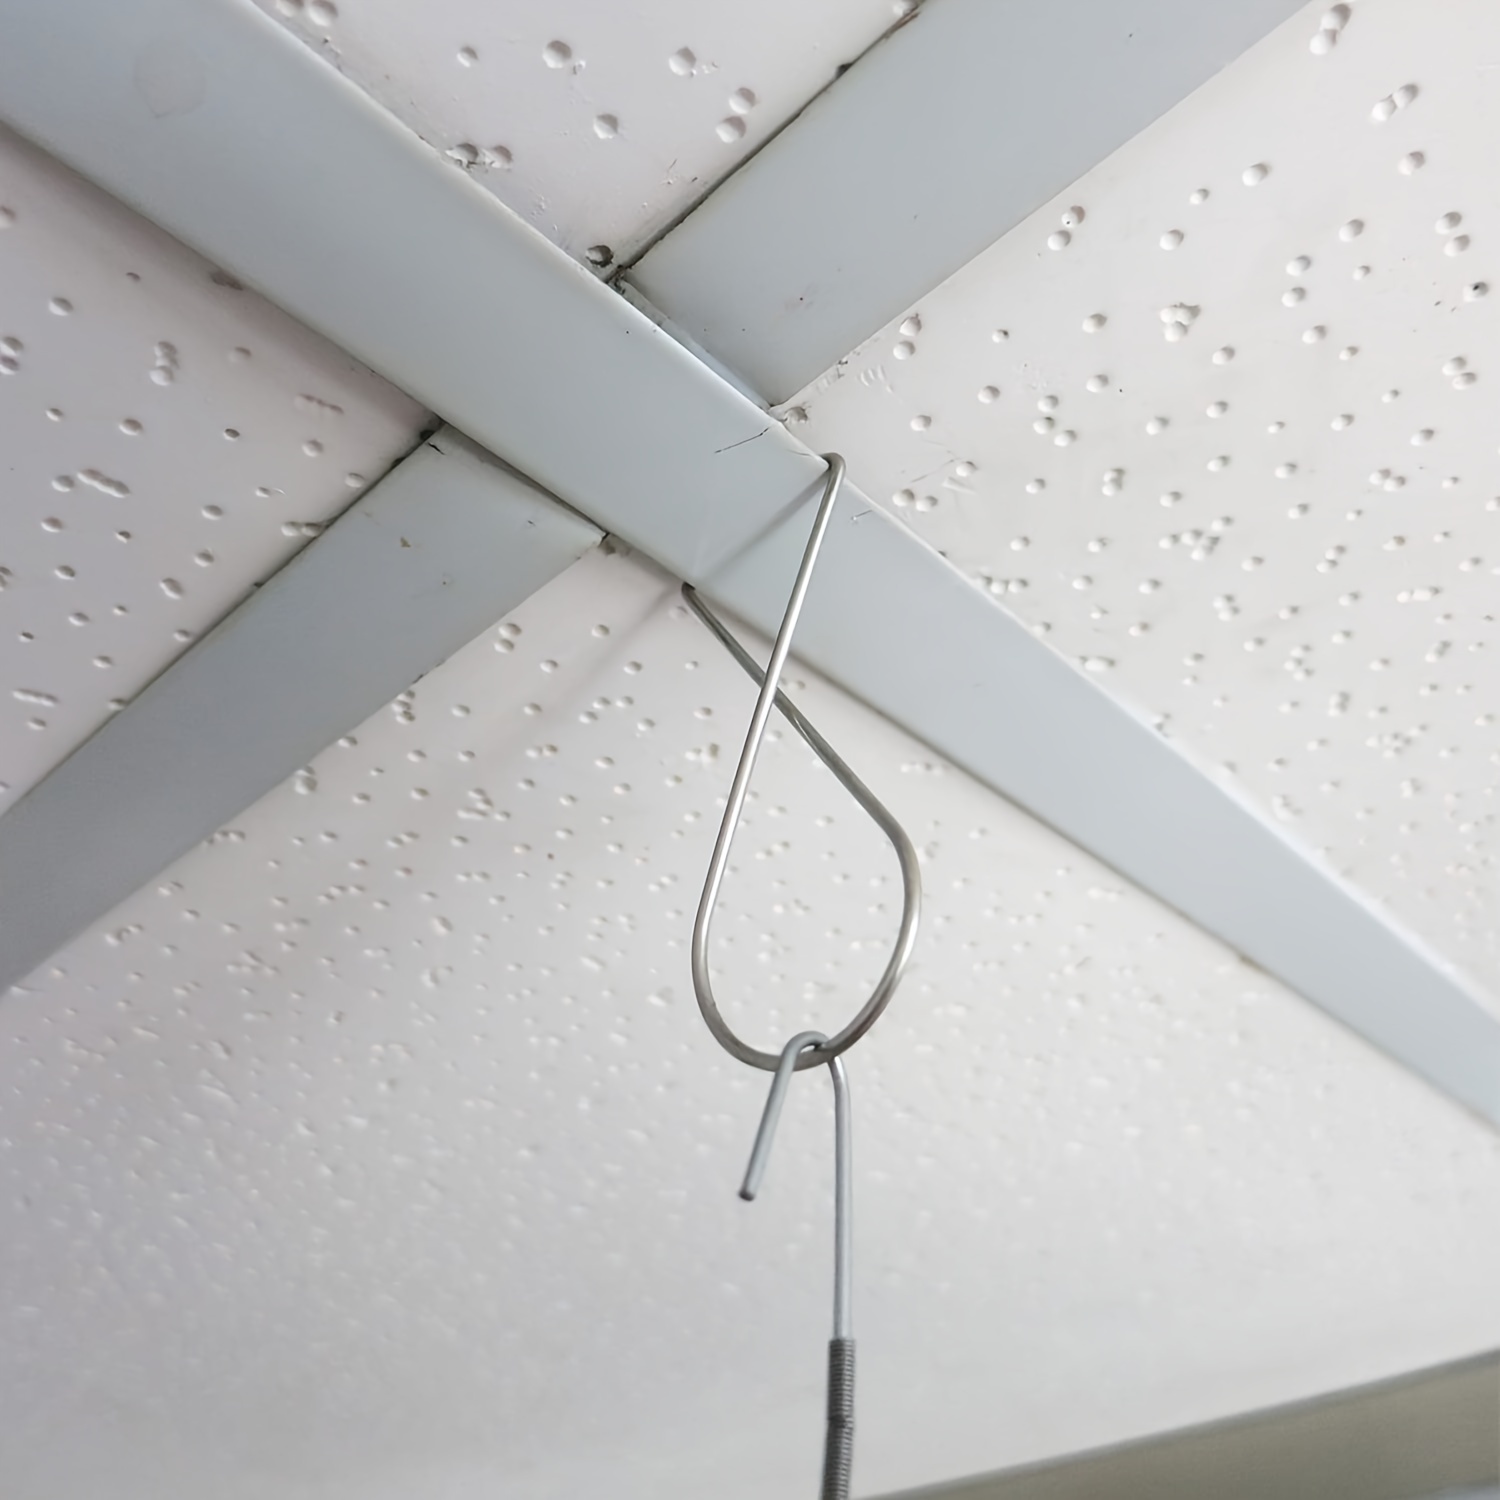 100pcs Ceiling Hook Clips Drop Ceiling Hanger Hooks Hanging Suspended  Ceiling Tile Grid Clips 